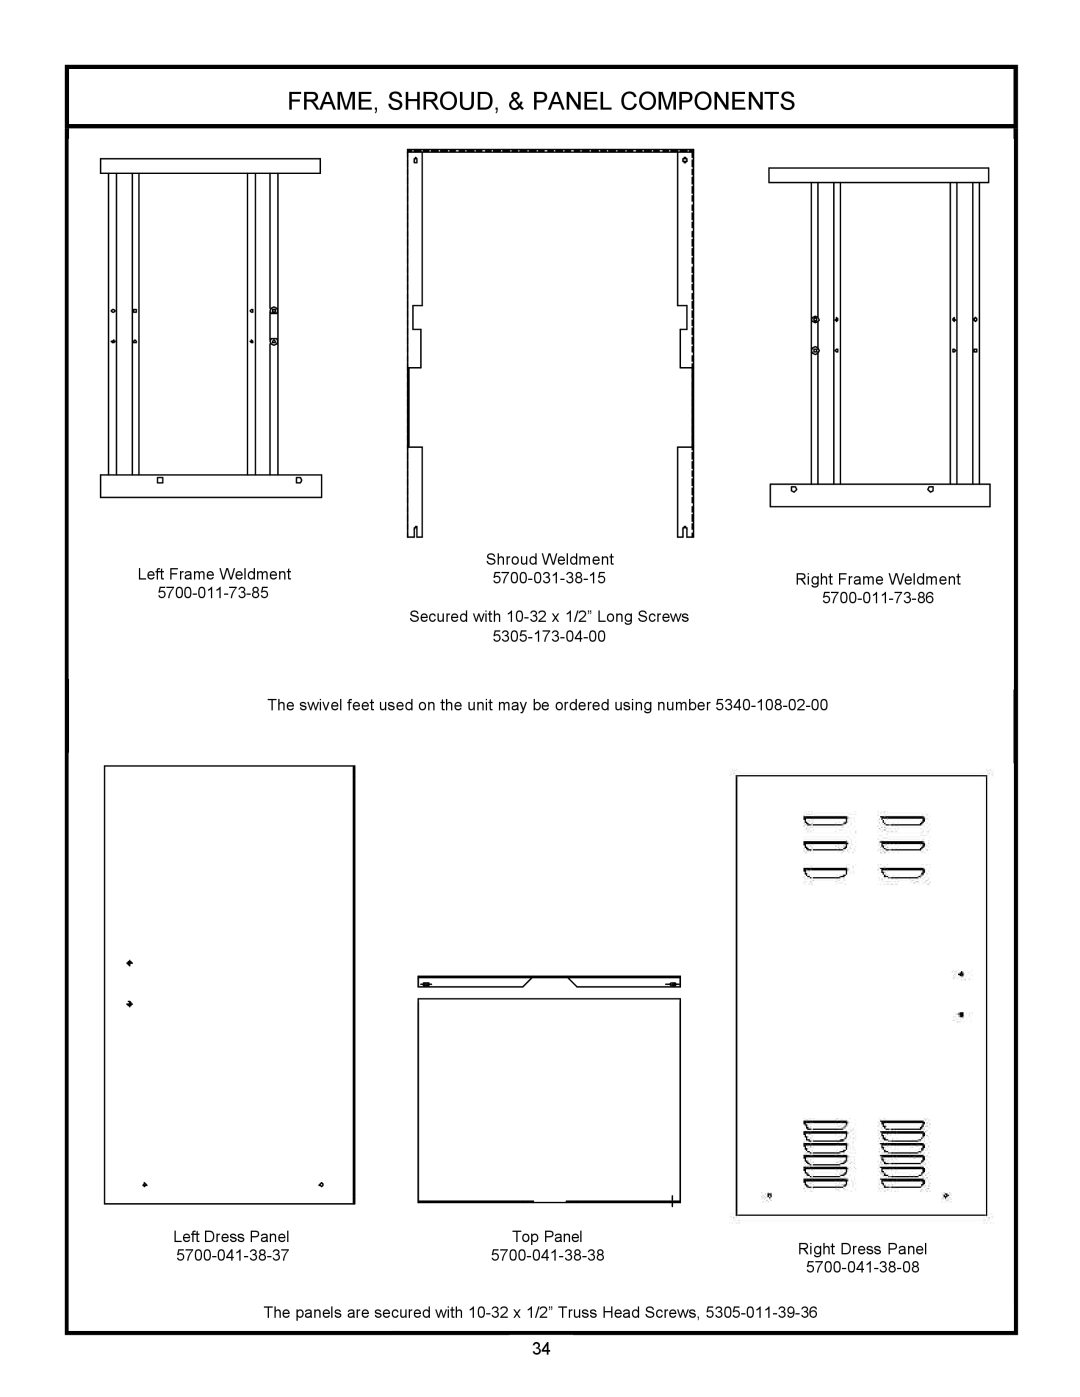 Jackson 24LTP Frame, Shroud, & Panel Components, Left Frame Weldment, 5700-031-38-15, 5700-011-73-86, Left Dress Panel 